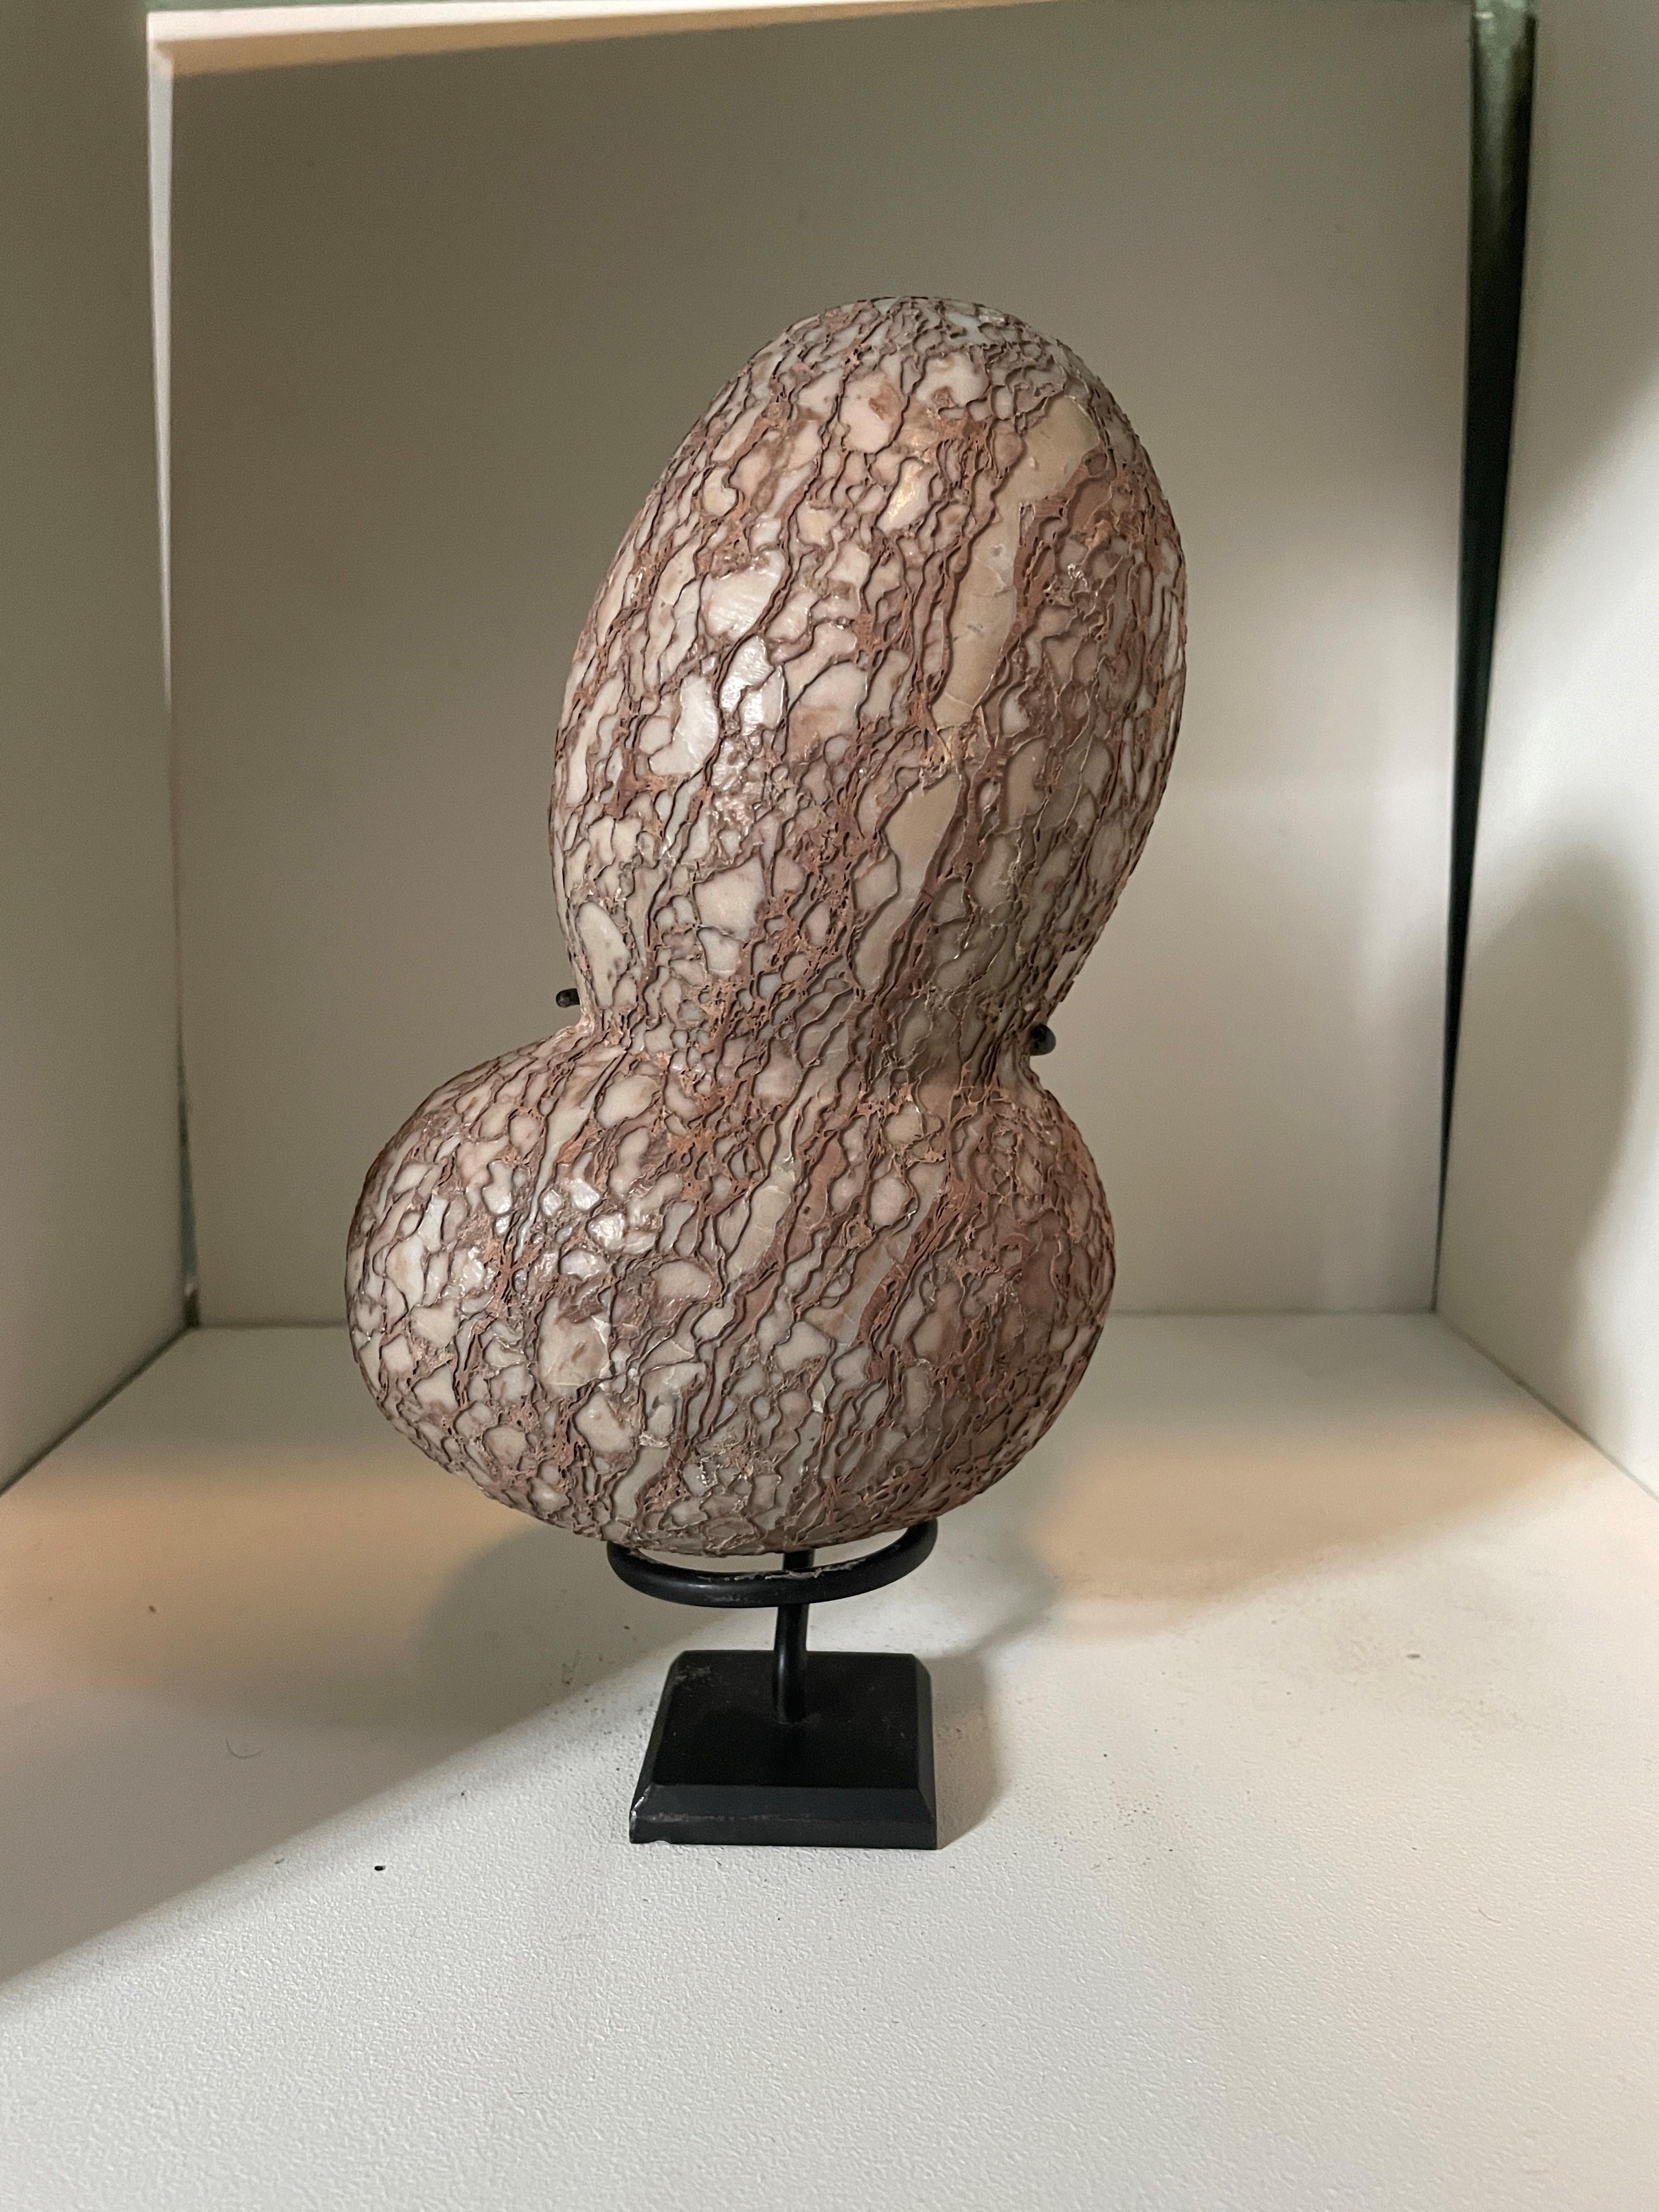 Ein Jahrtausende altes, natürlich geformtes und geädertes Quartzit-Ei aus der Provinz Henan, China. Diese seltsamen Steine werden in den Bergen gefunden und im Geiste von Gongshi gesammelt. Besser bekannt unter dem japanischen Begriff Suiseki,